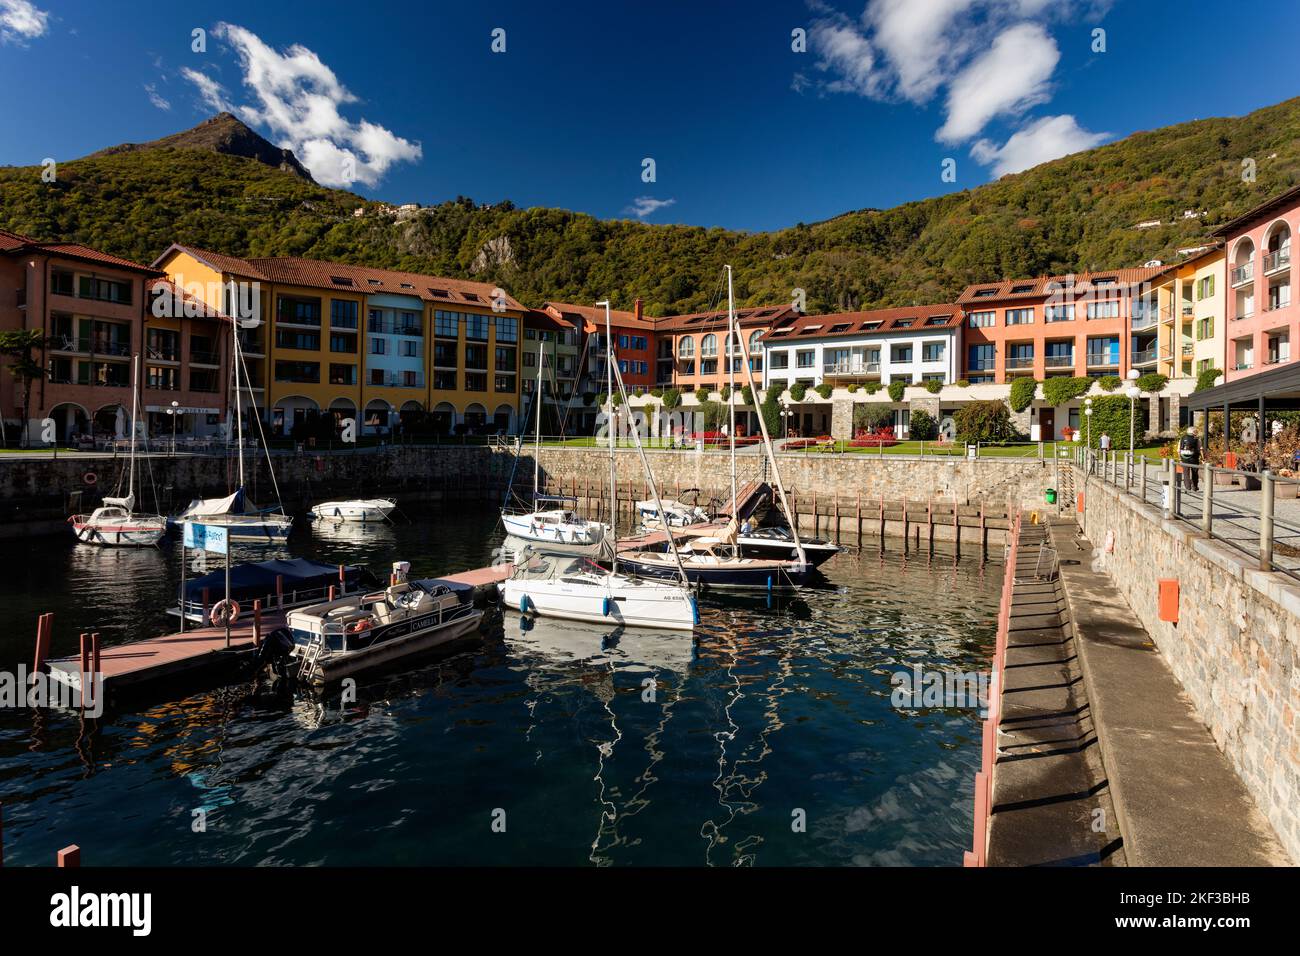 Hapimag Resort Cannero, Cannero Riviera, Lago Maggiore, Verban-Cusio-Ossola, Piedmont, Italy Stock Photo